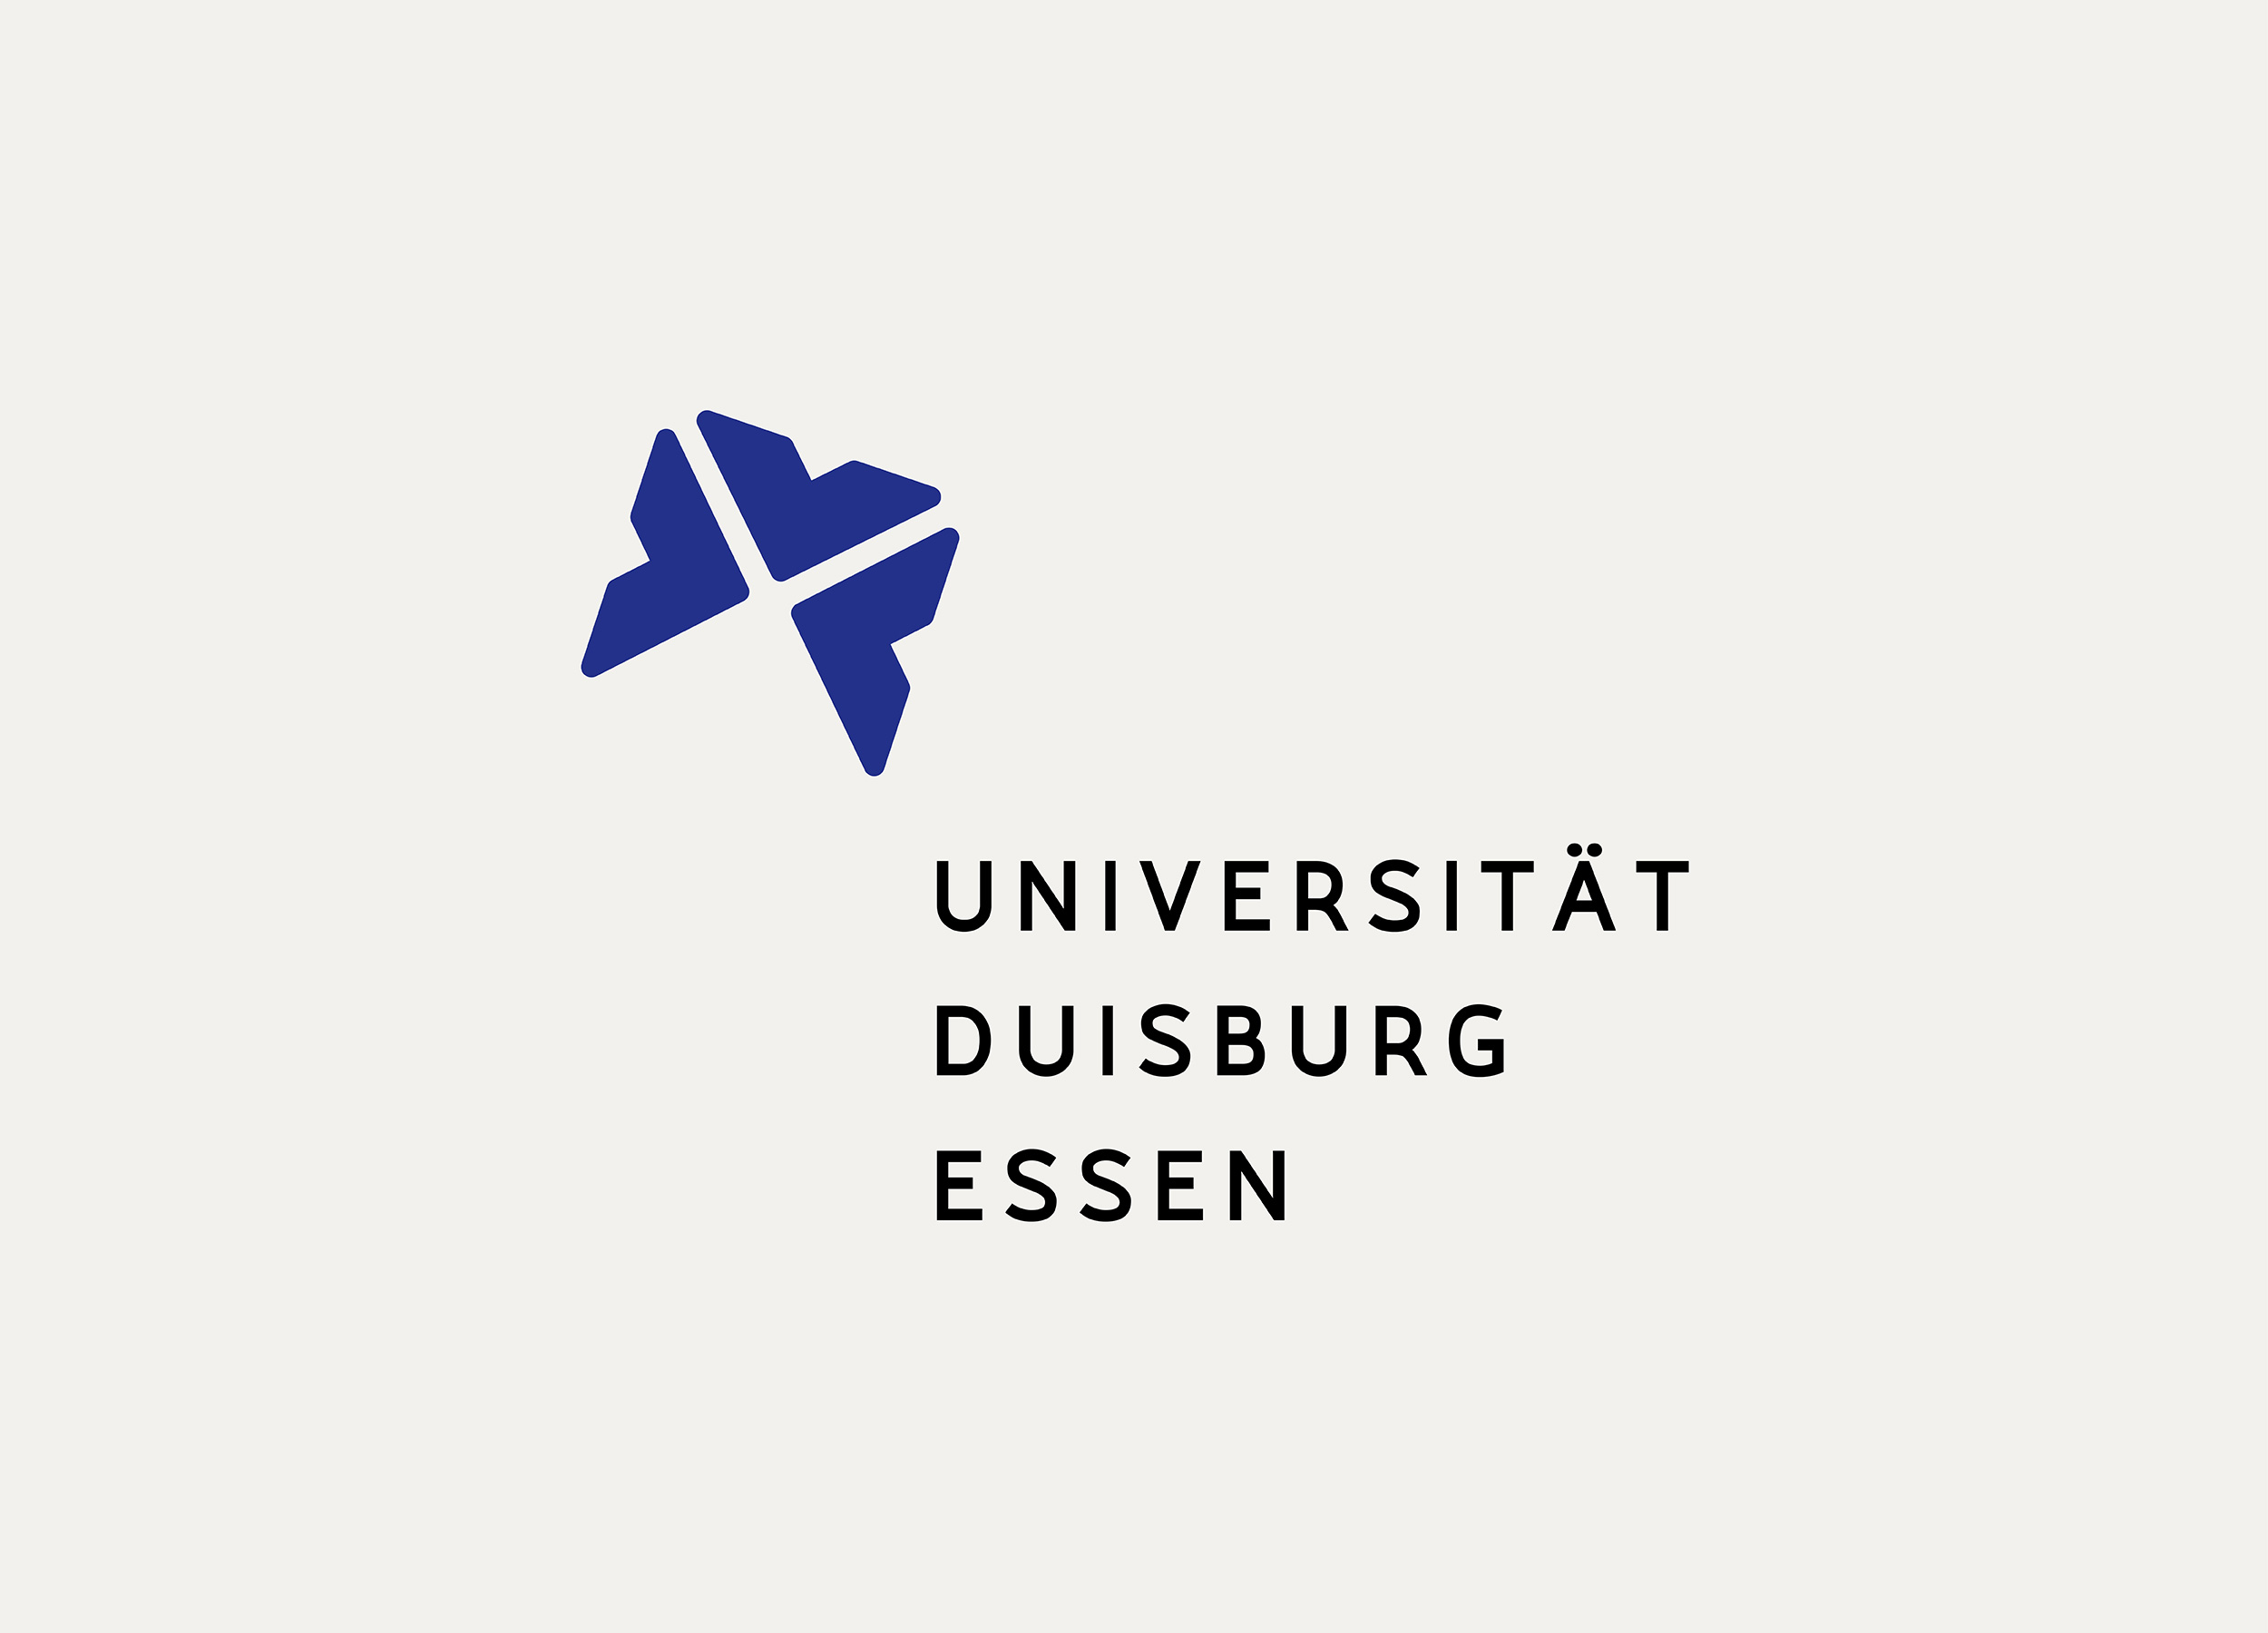 Wettbewerbsbeitrag für das Redesign der Universität Duisburg-Essen.